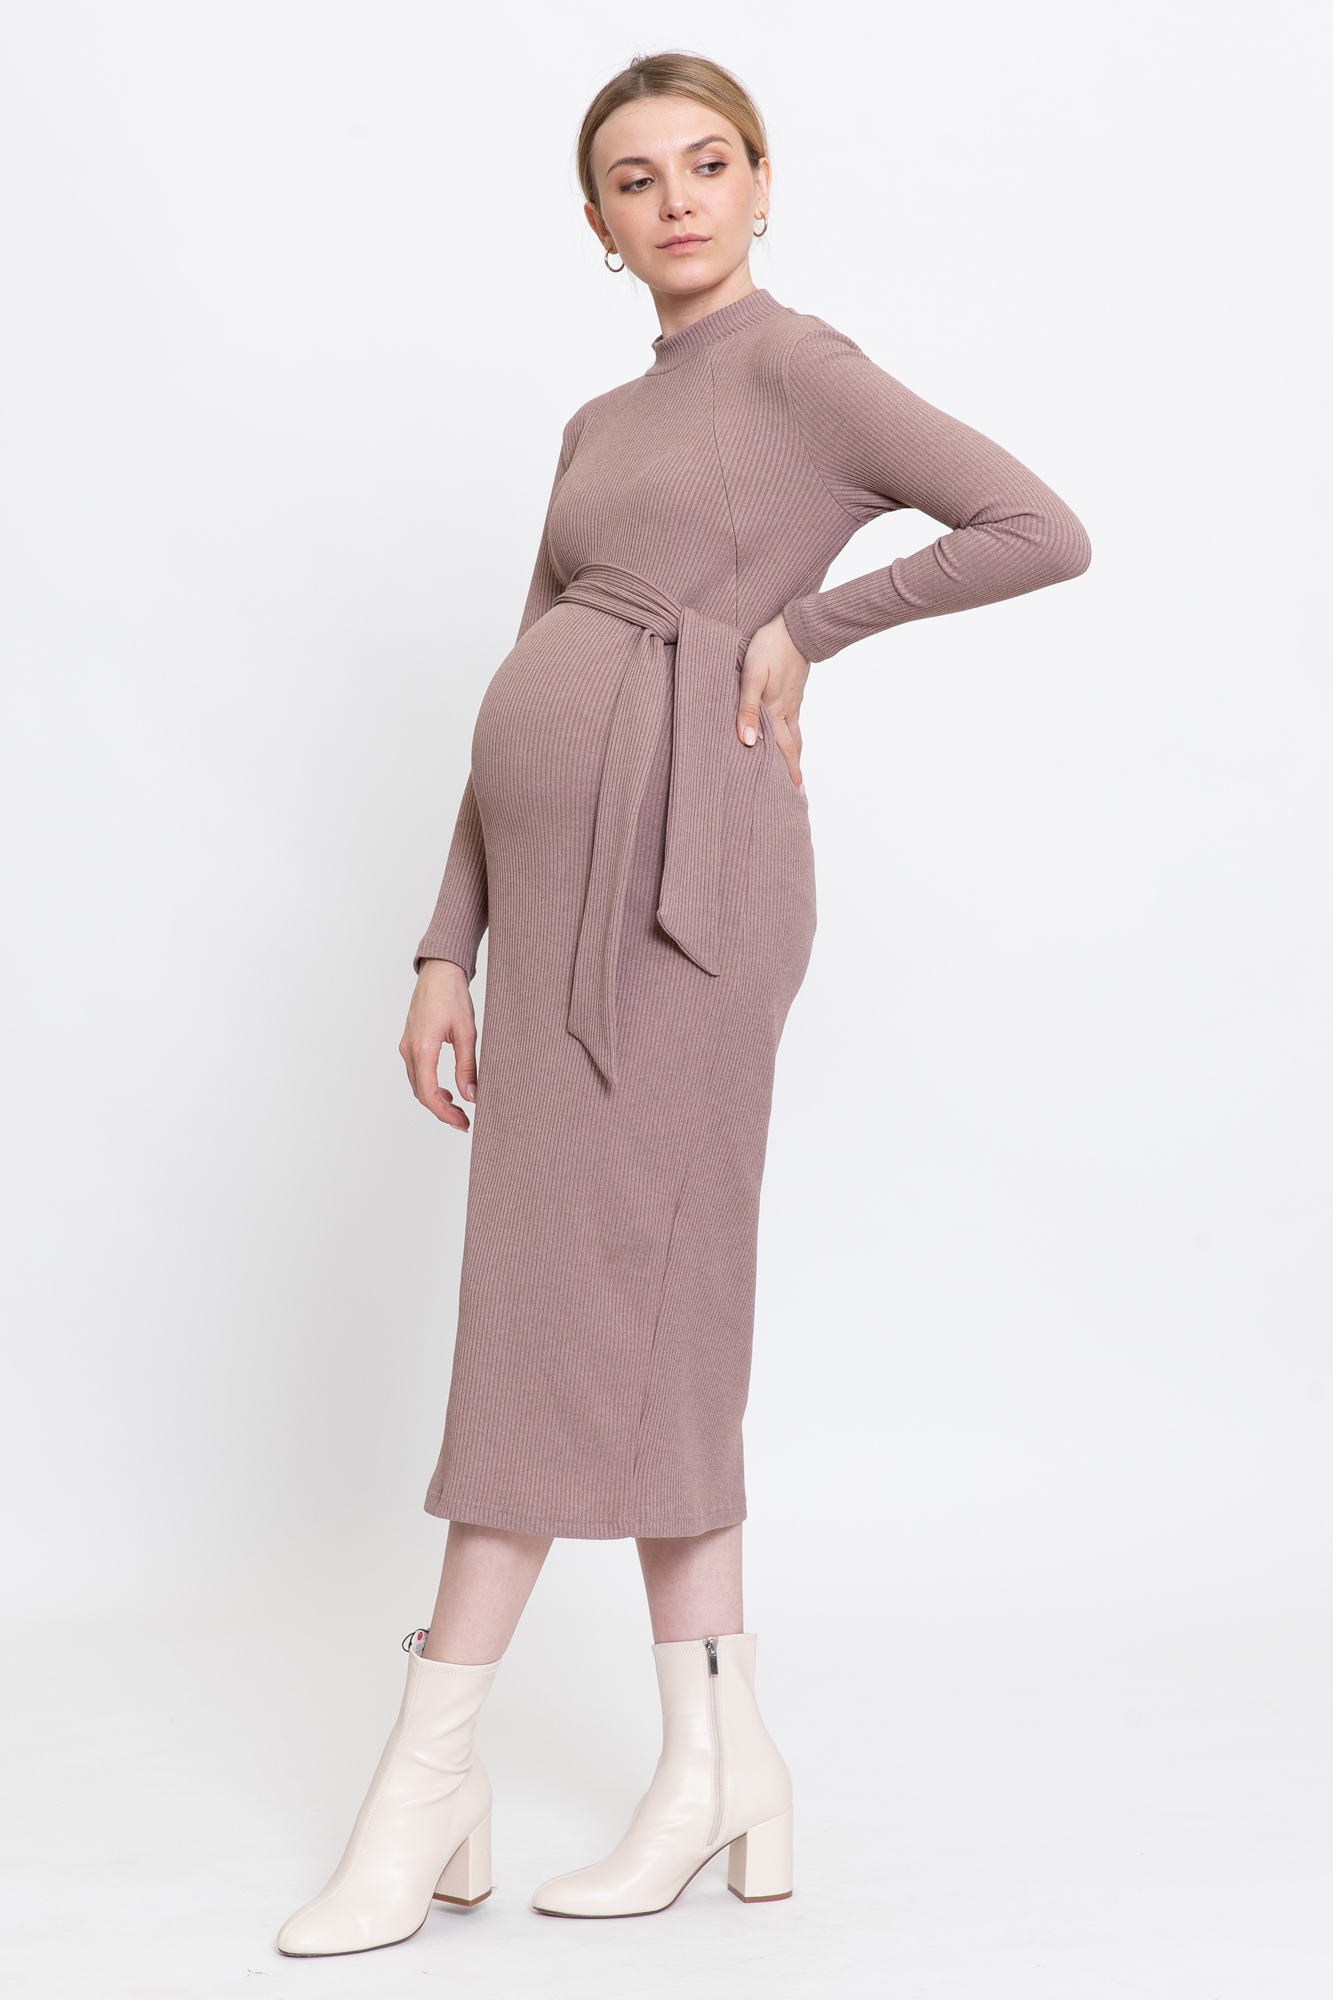 Платье для беременных женское Magica bellezza 0178а коричневое 46 RU